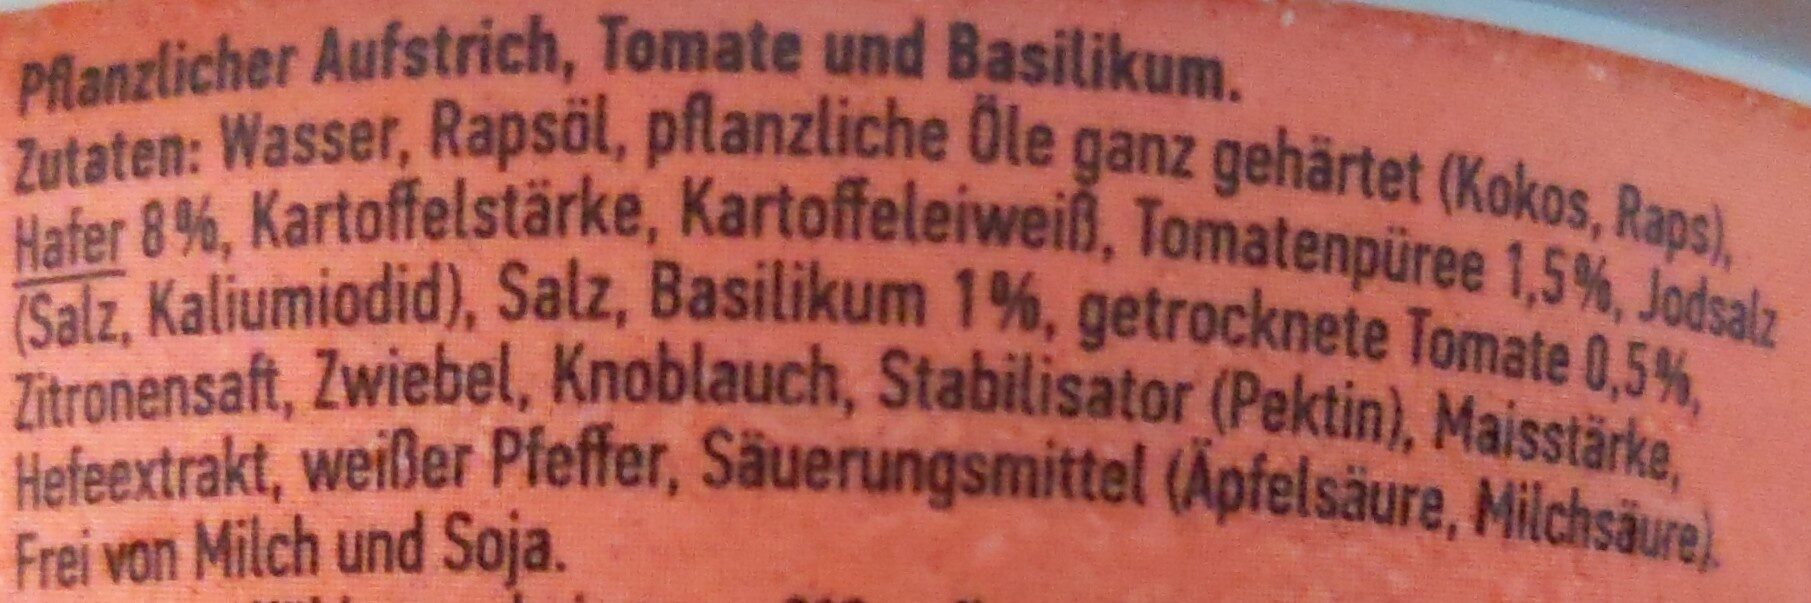 Aufstrich Tomate & Basilikum - Ingredients - de